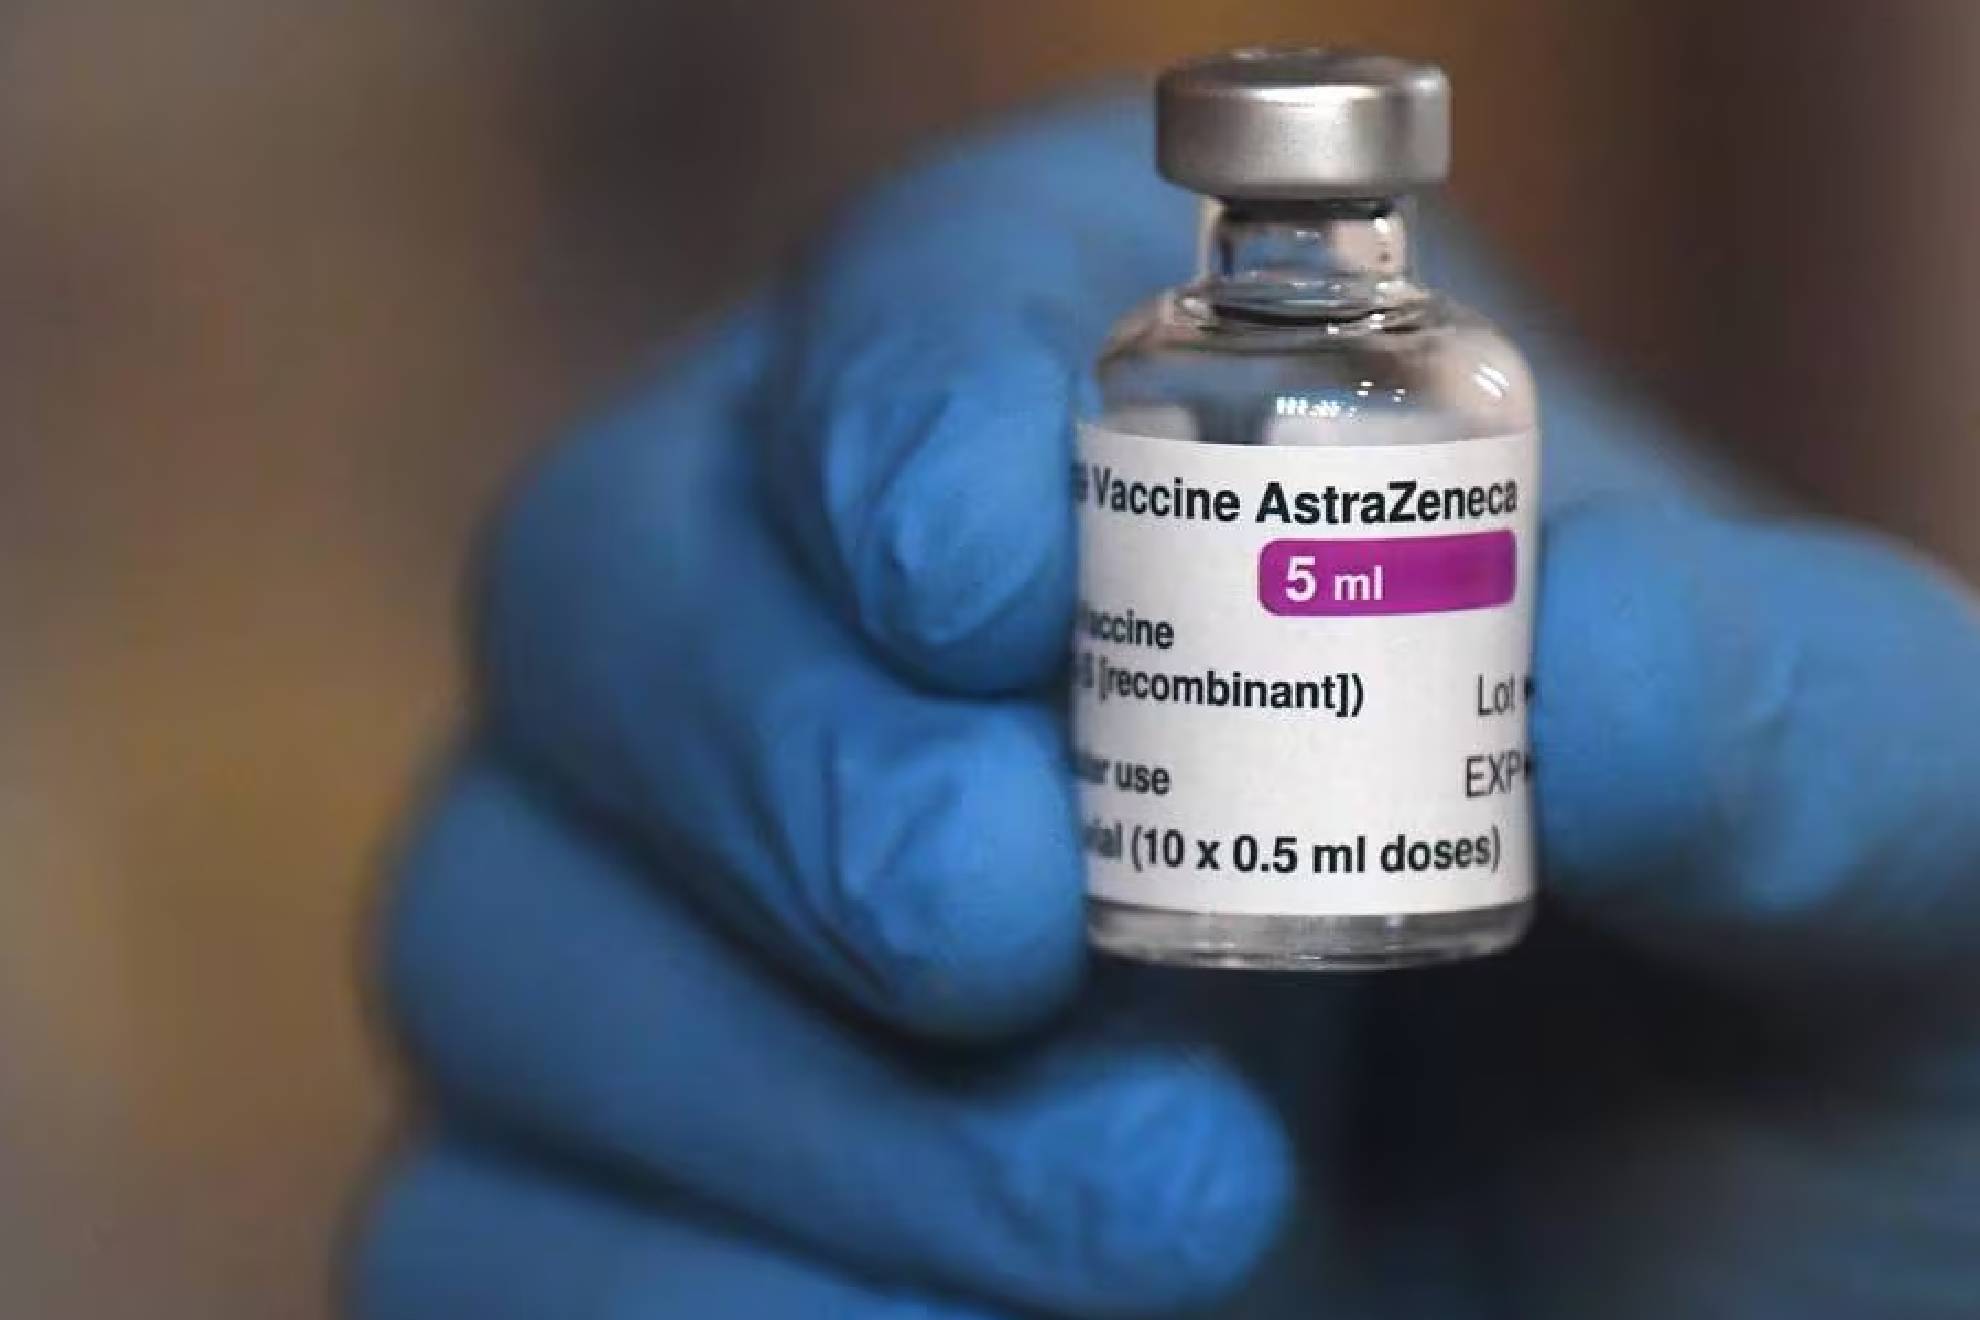 La farmacutica AstraZeneca ha retirado su polmica vacuna contra Covid-19 en todo el mundo.